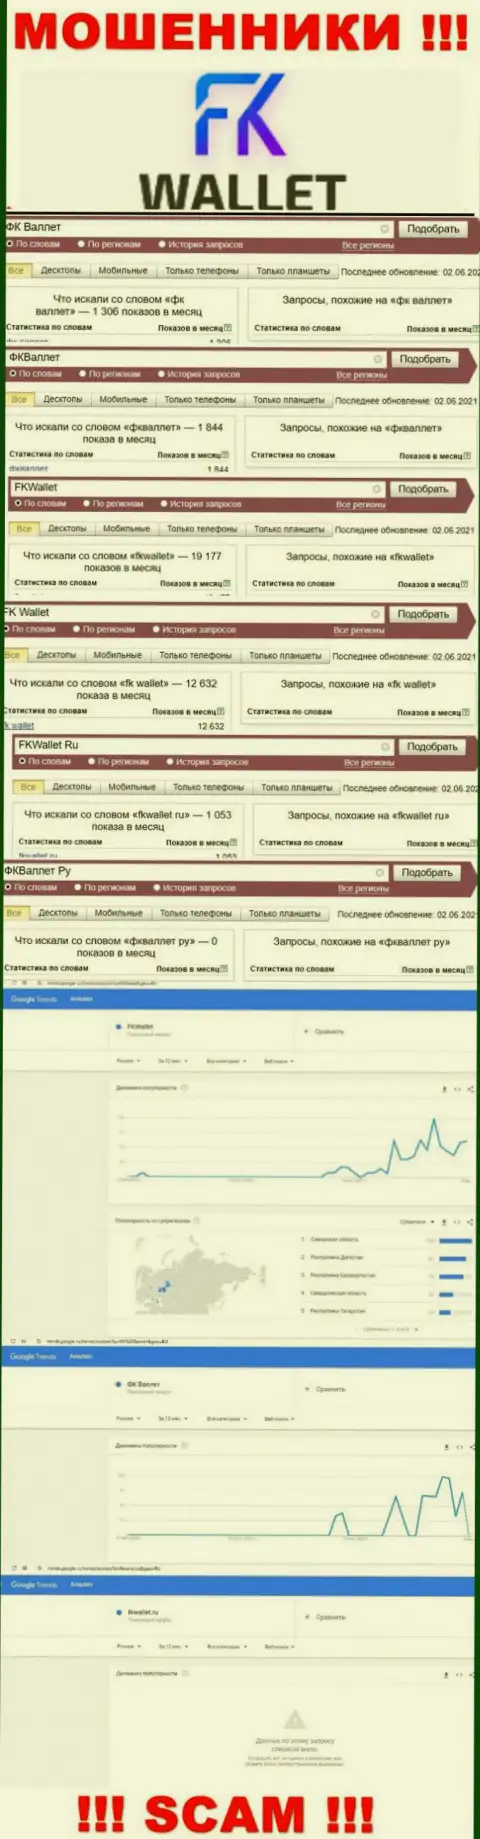 Скрин итога поисковых запросов по противозаконно действующей конторе FK Wallet